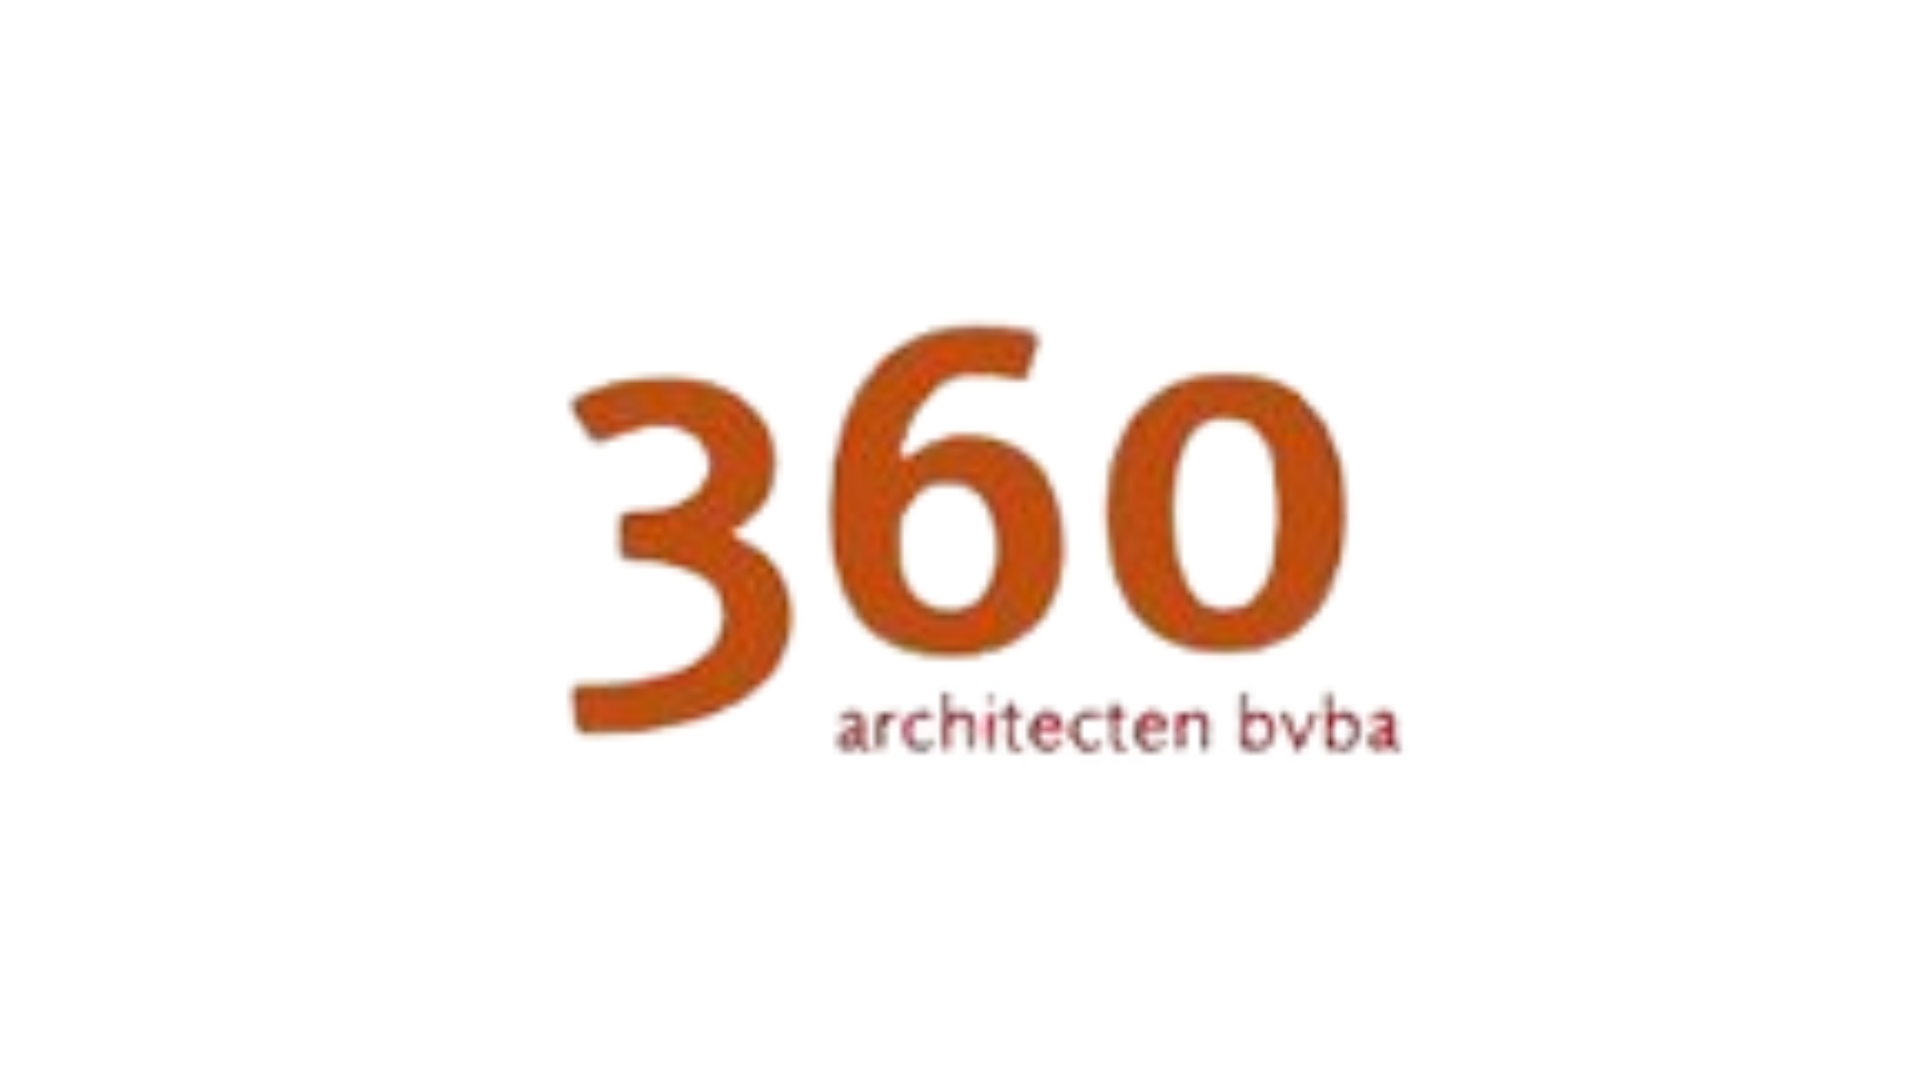 360 Architecten bvba